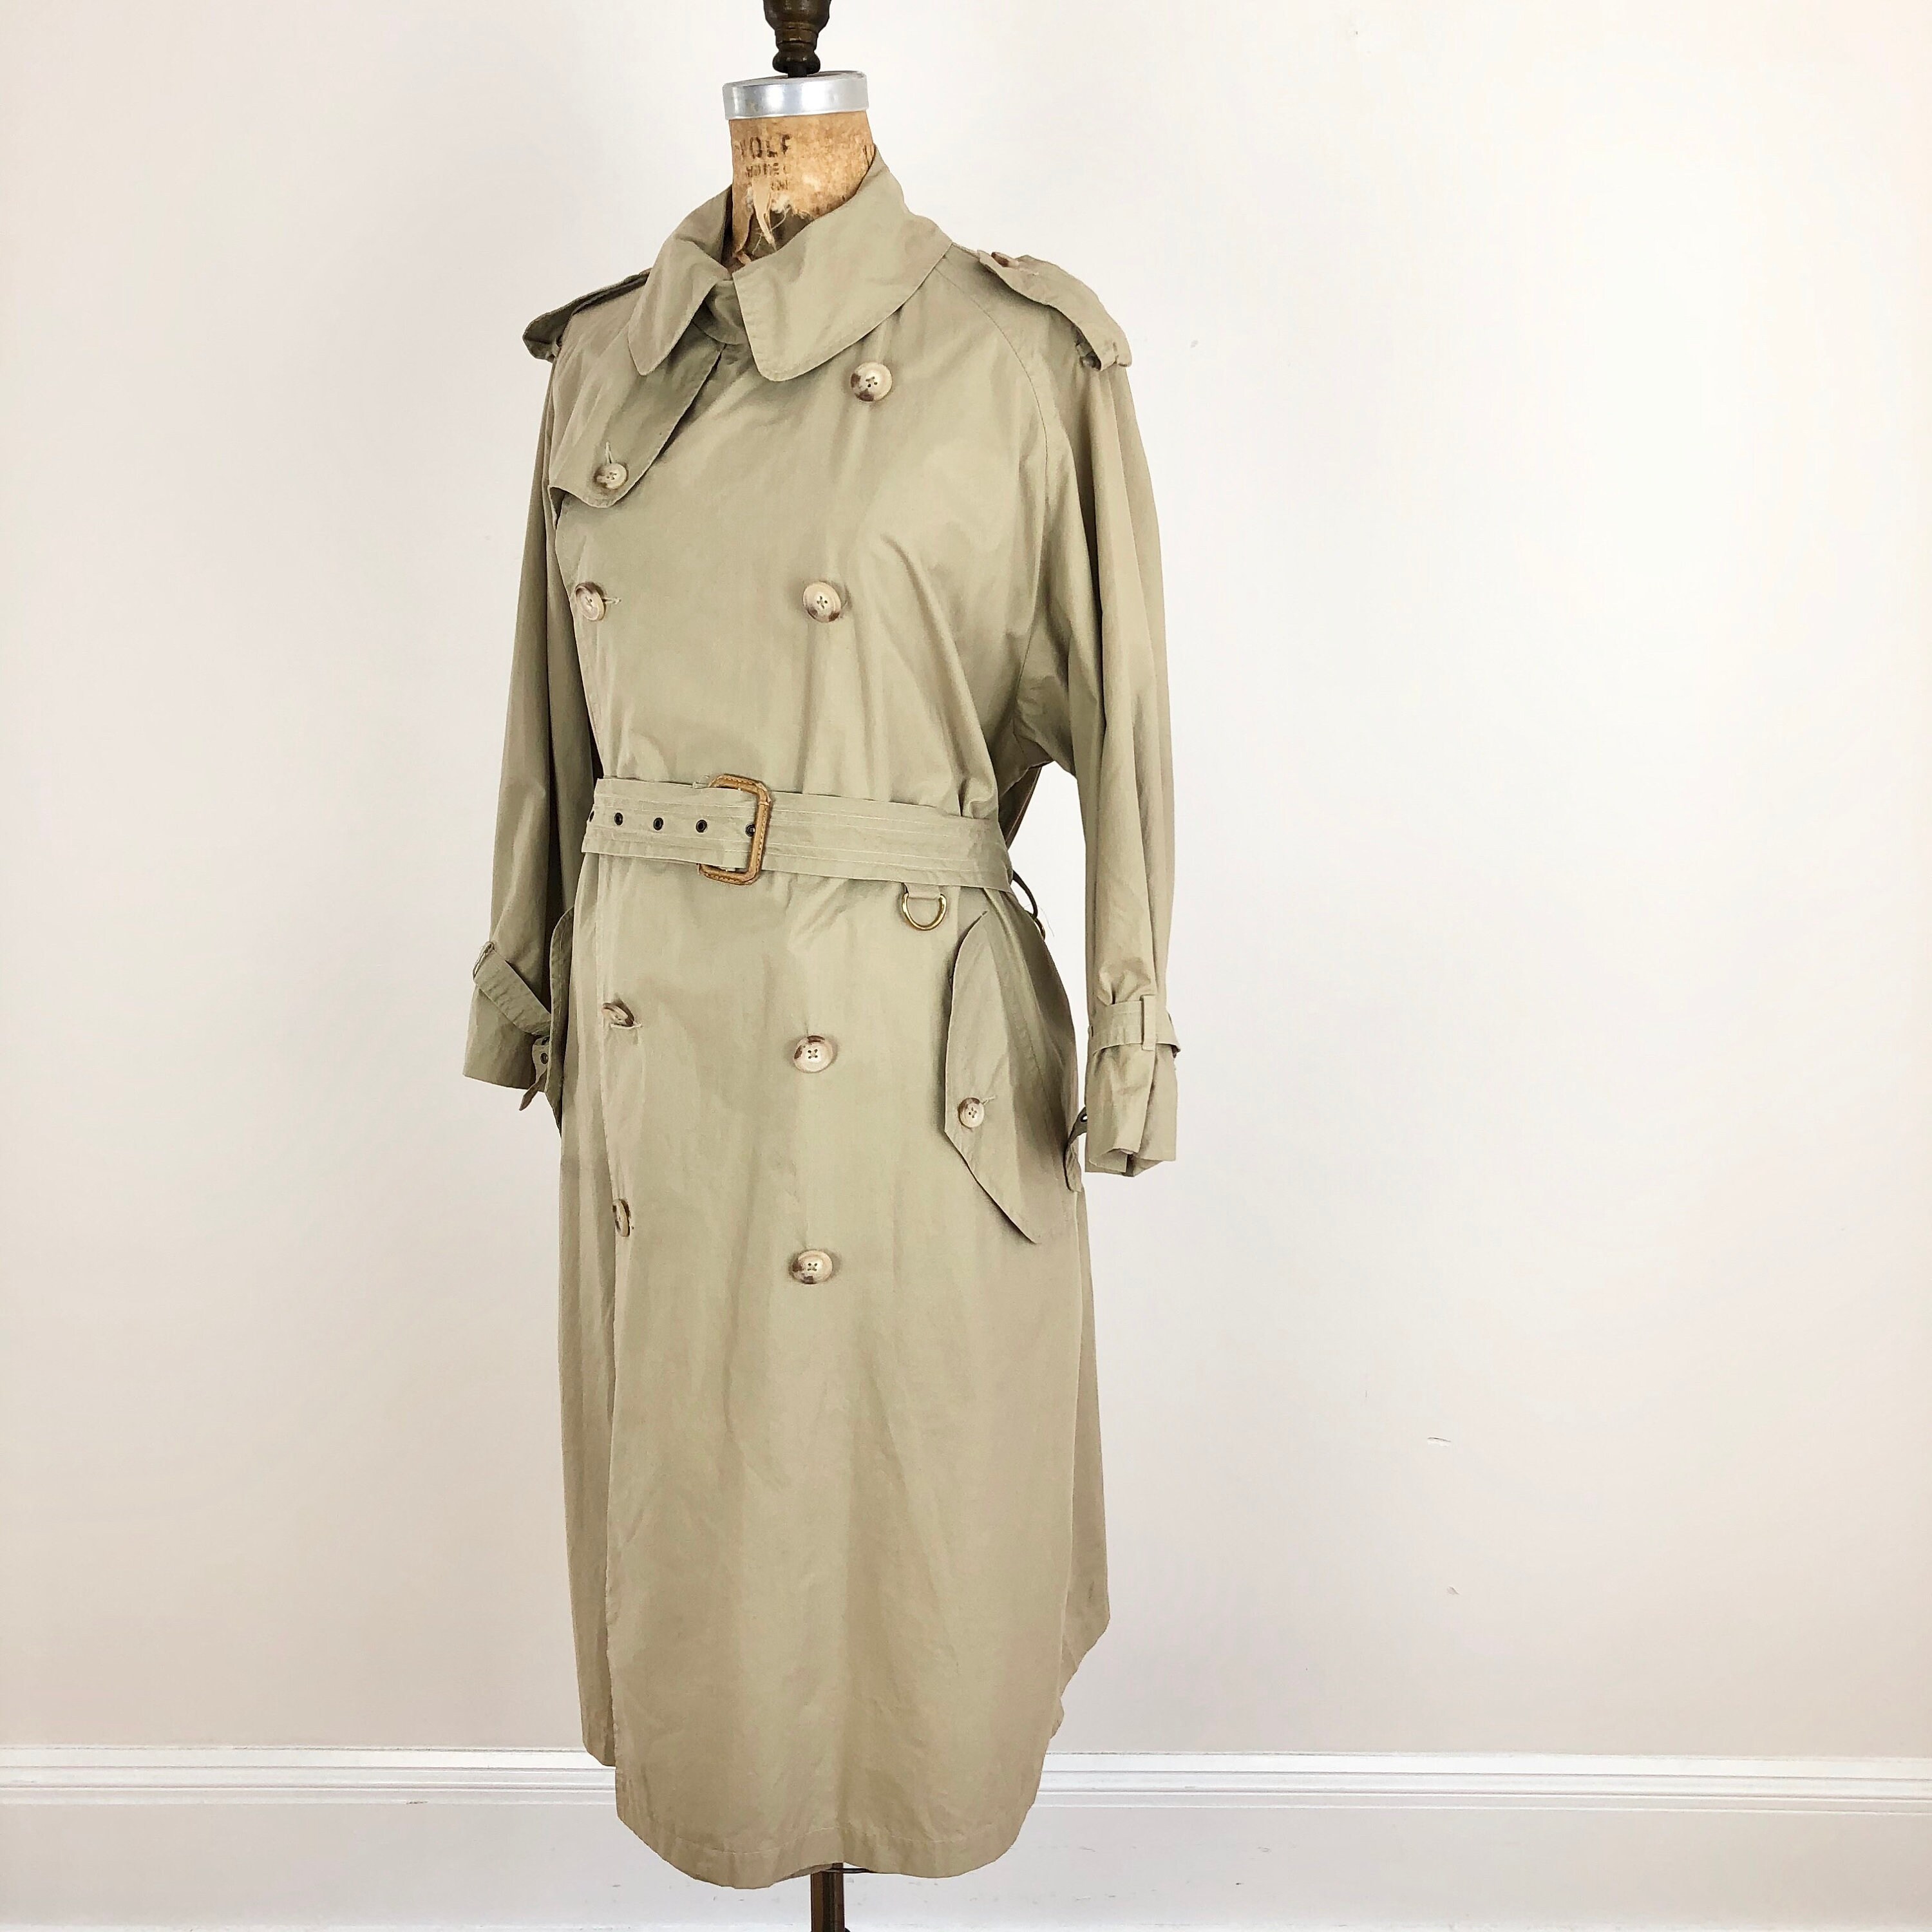 『3年保証』 vintage 80s Burberry trench 一枚袖 coat トレンチコート